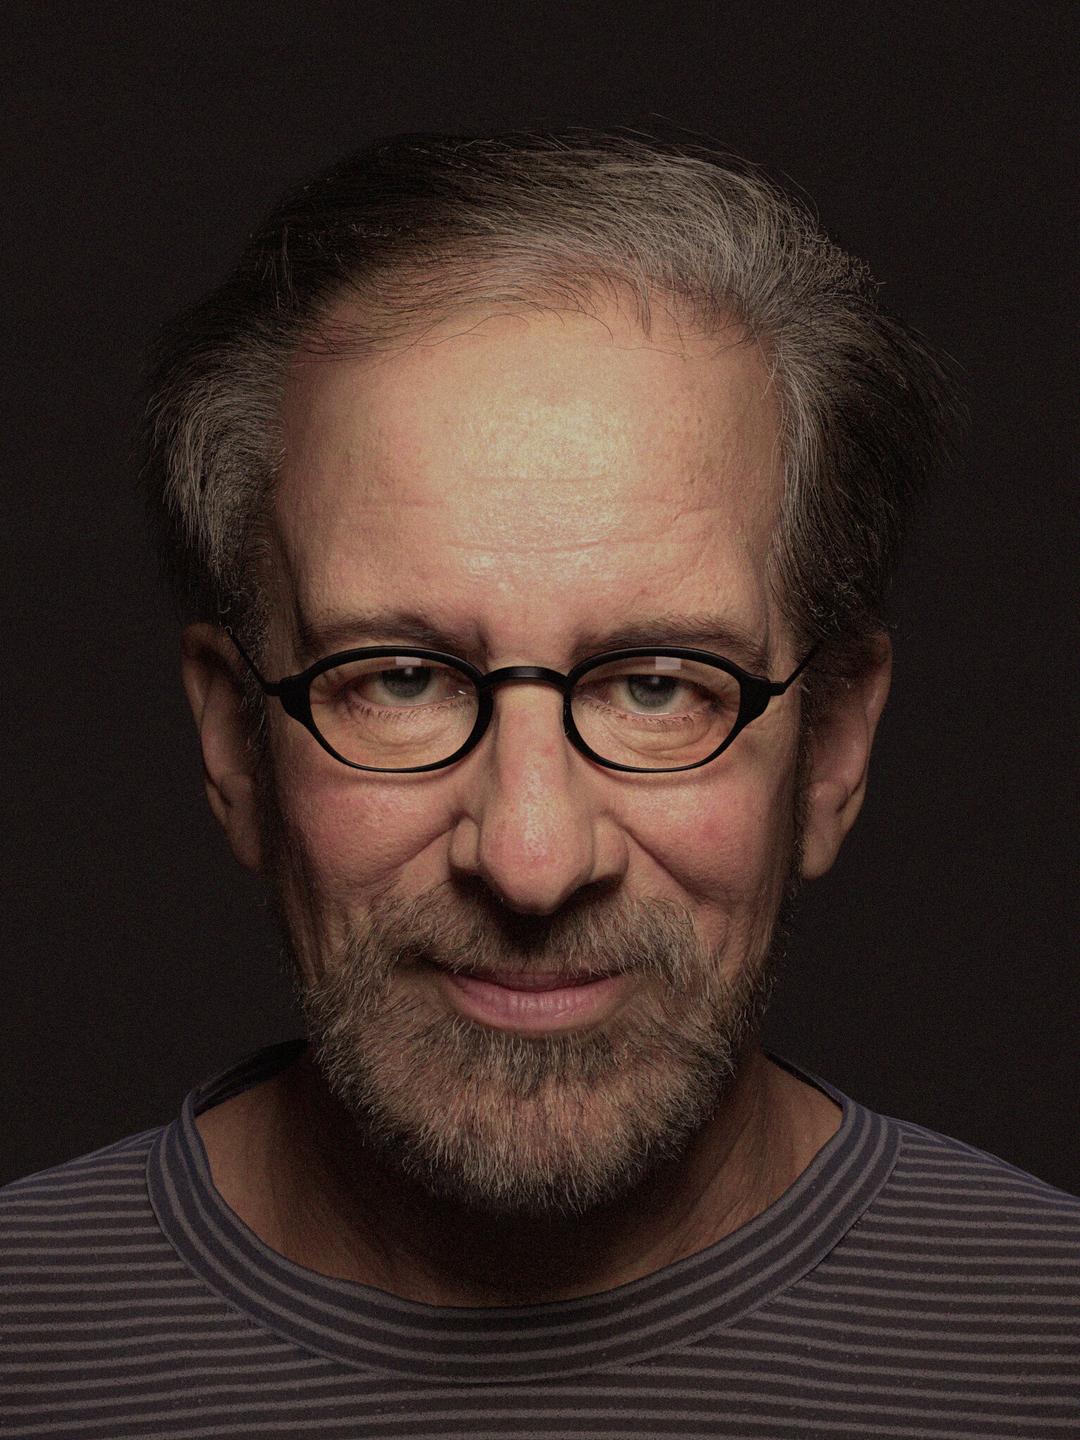 Steven Spielberg young photos